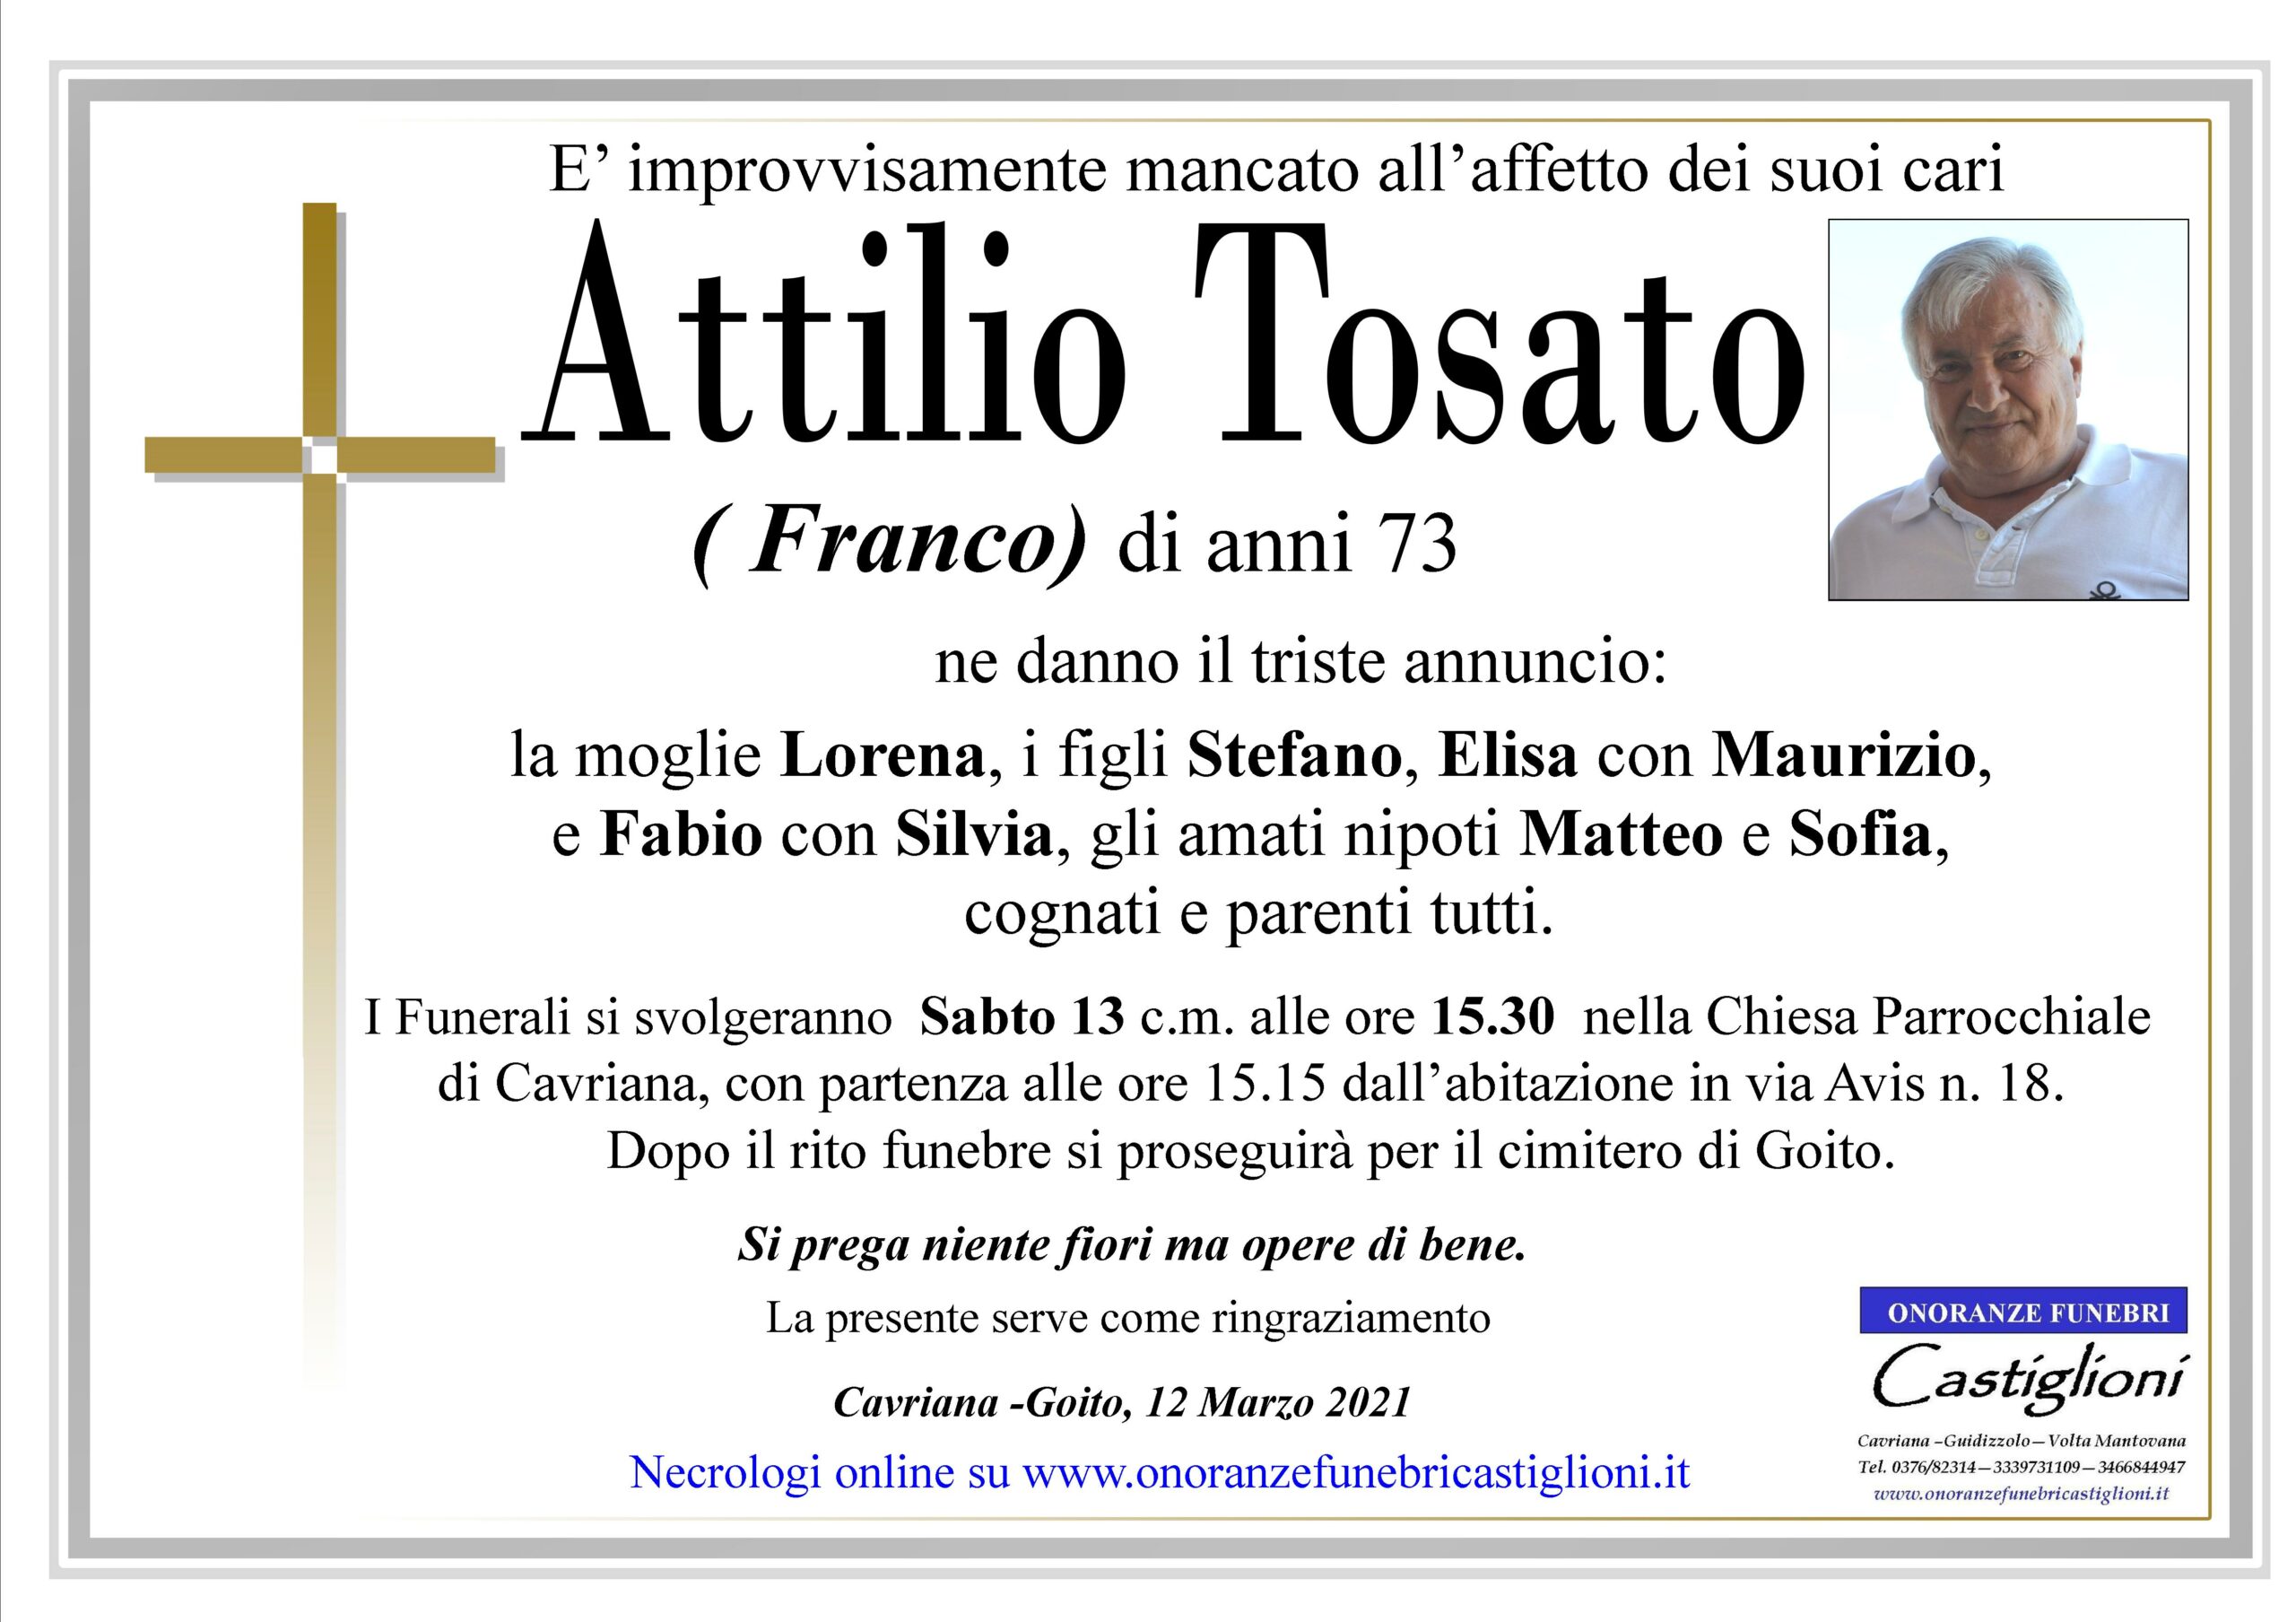 Attilio Tosato